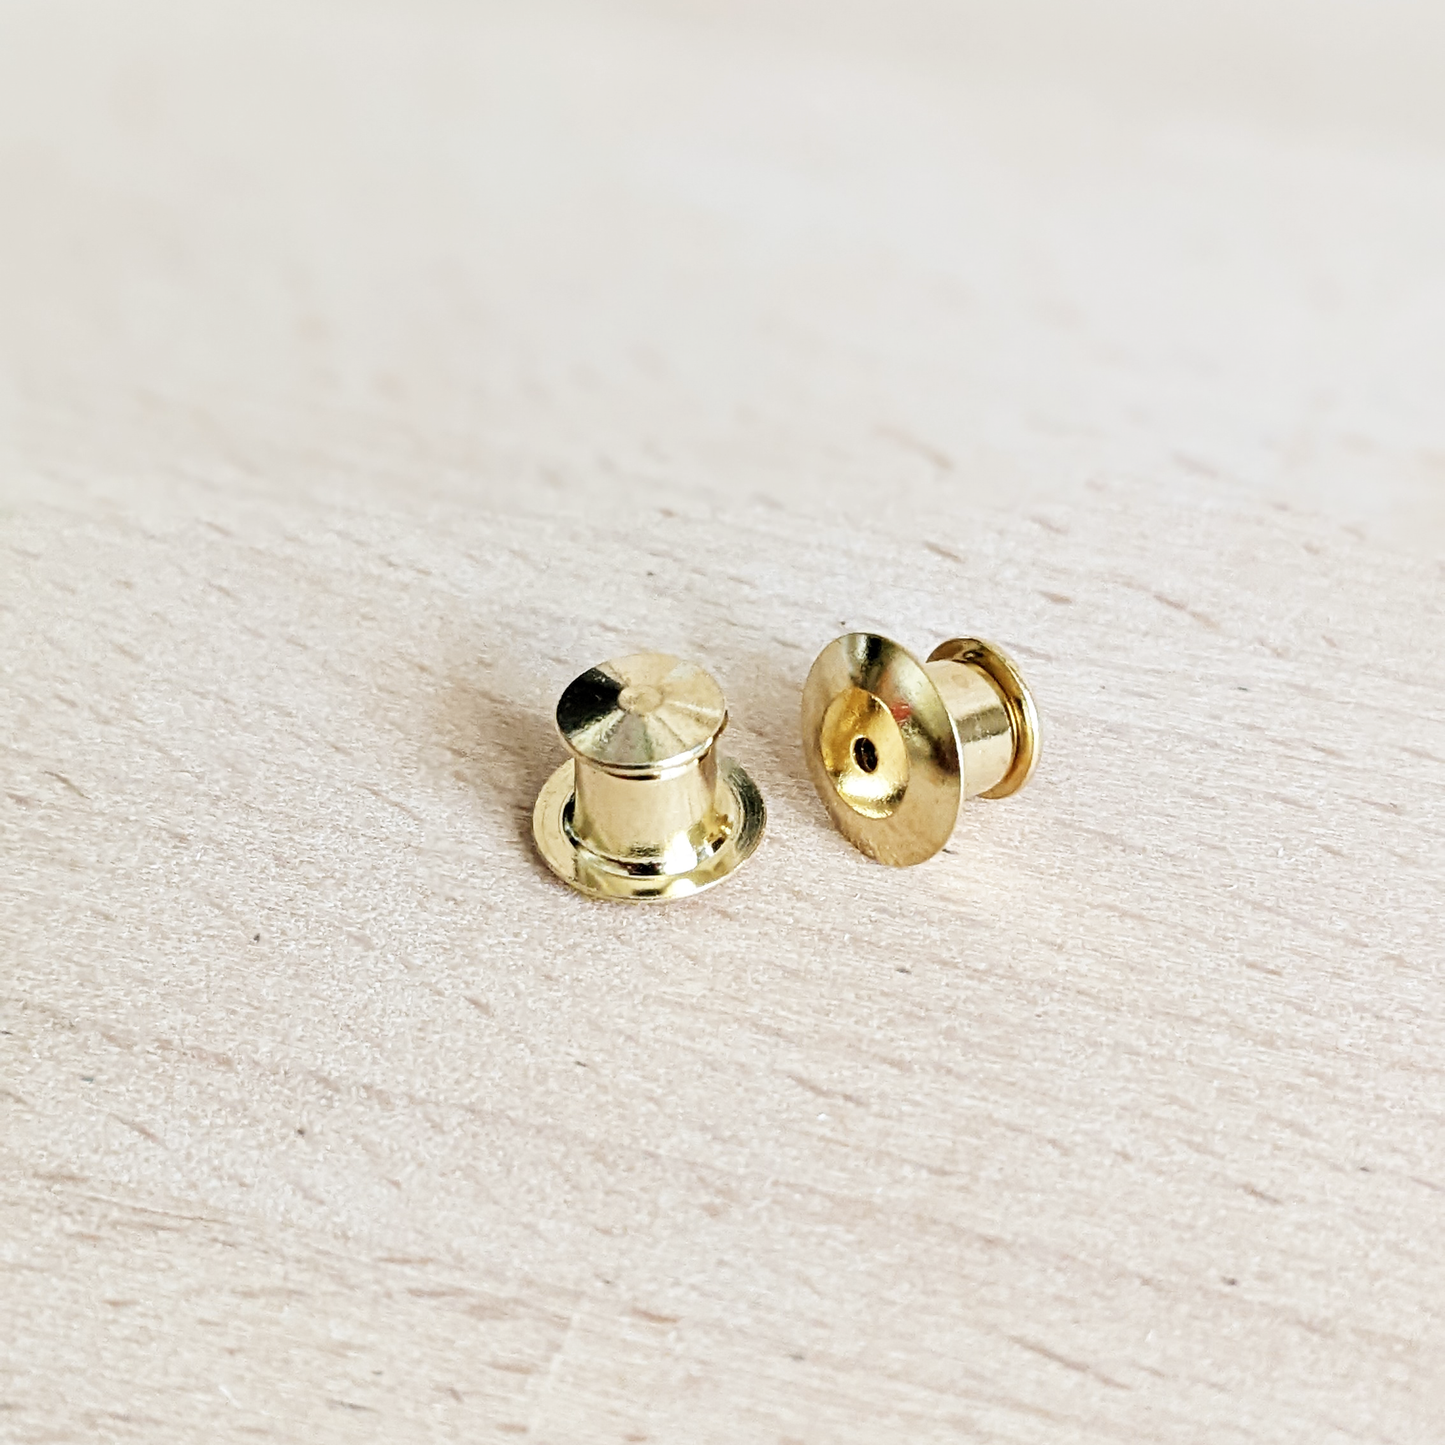 Locking Pin Backs (1, 2, 5, 10pcs) - Gold metal